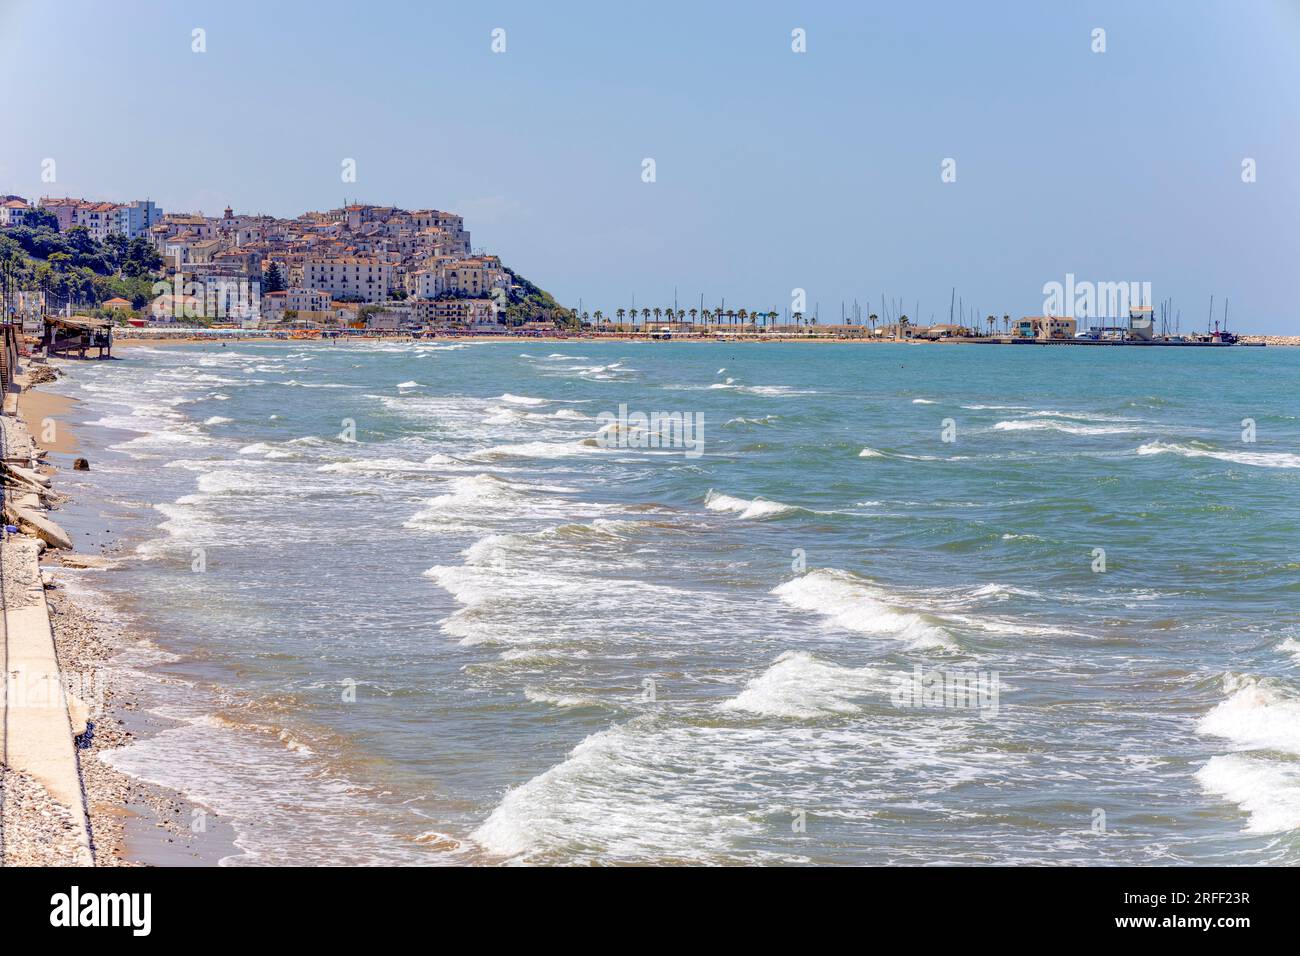 View of the sea village of Rodi Garganico in Apuglia, Adriatic sea, Italy Stock Photo